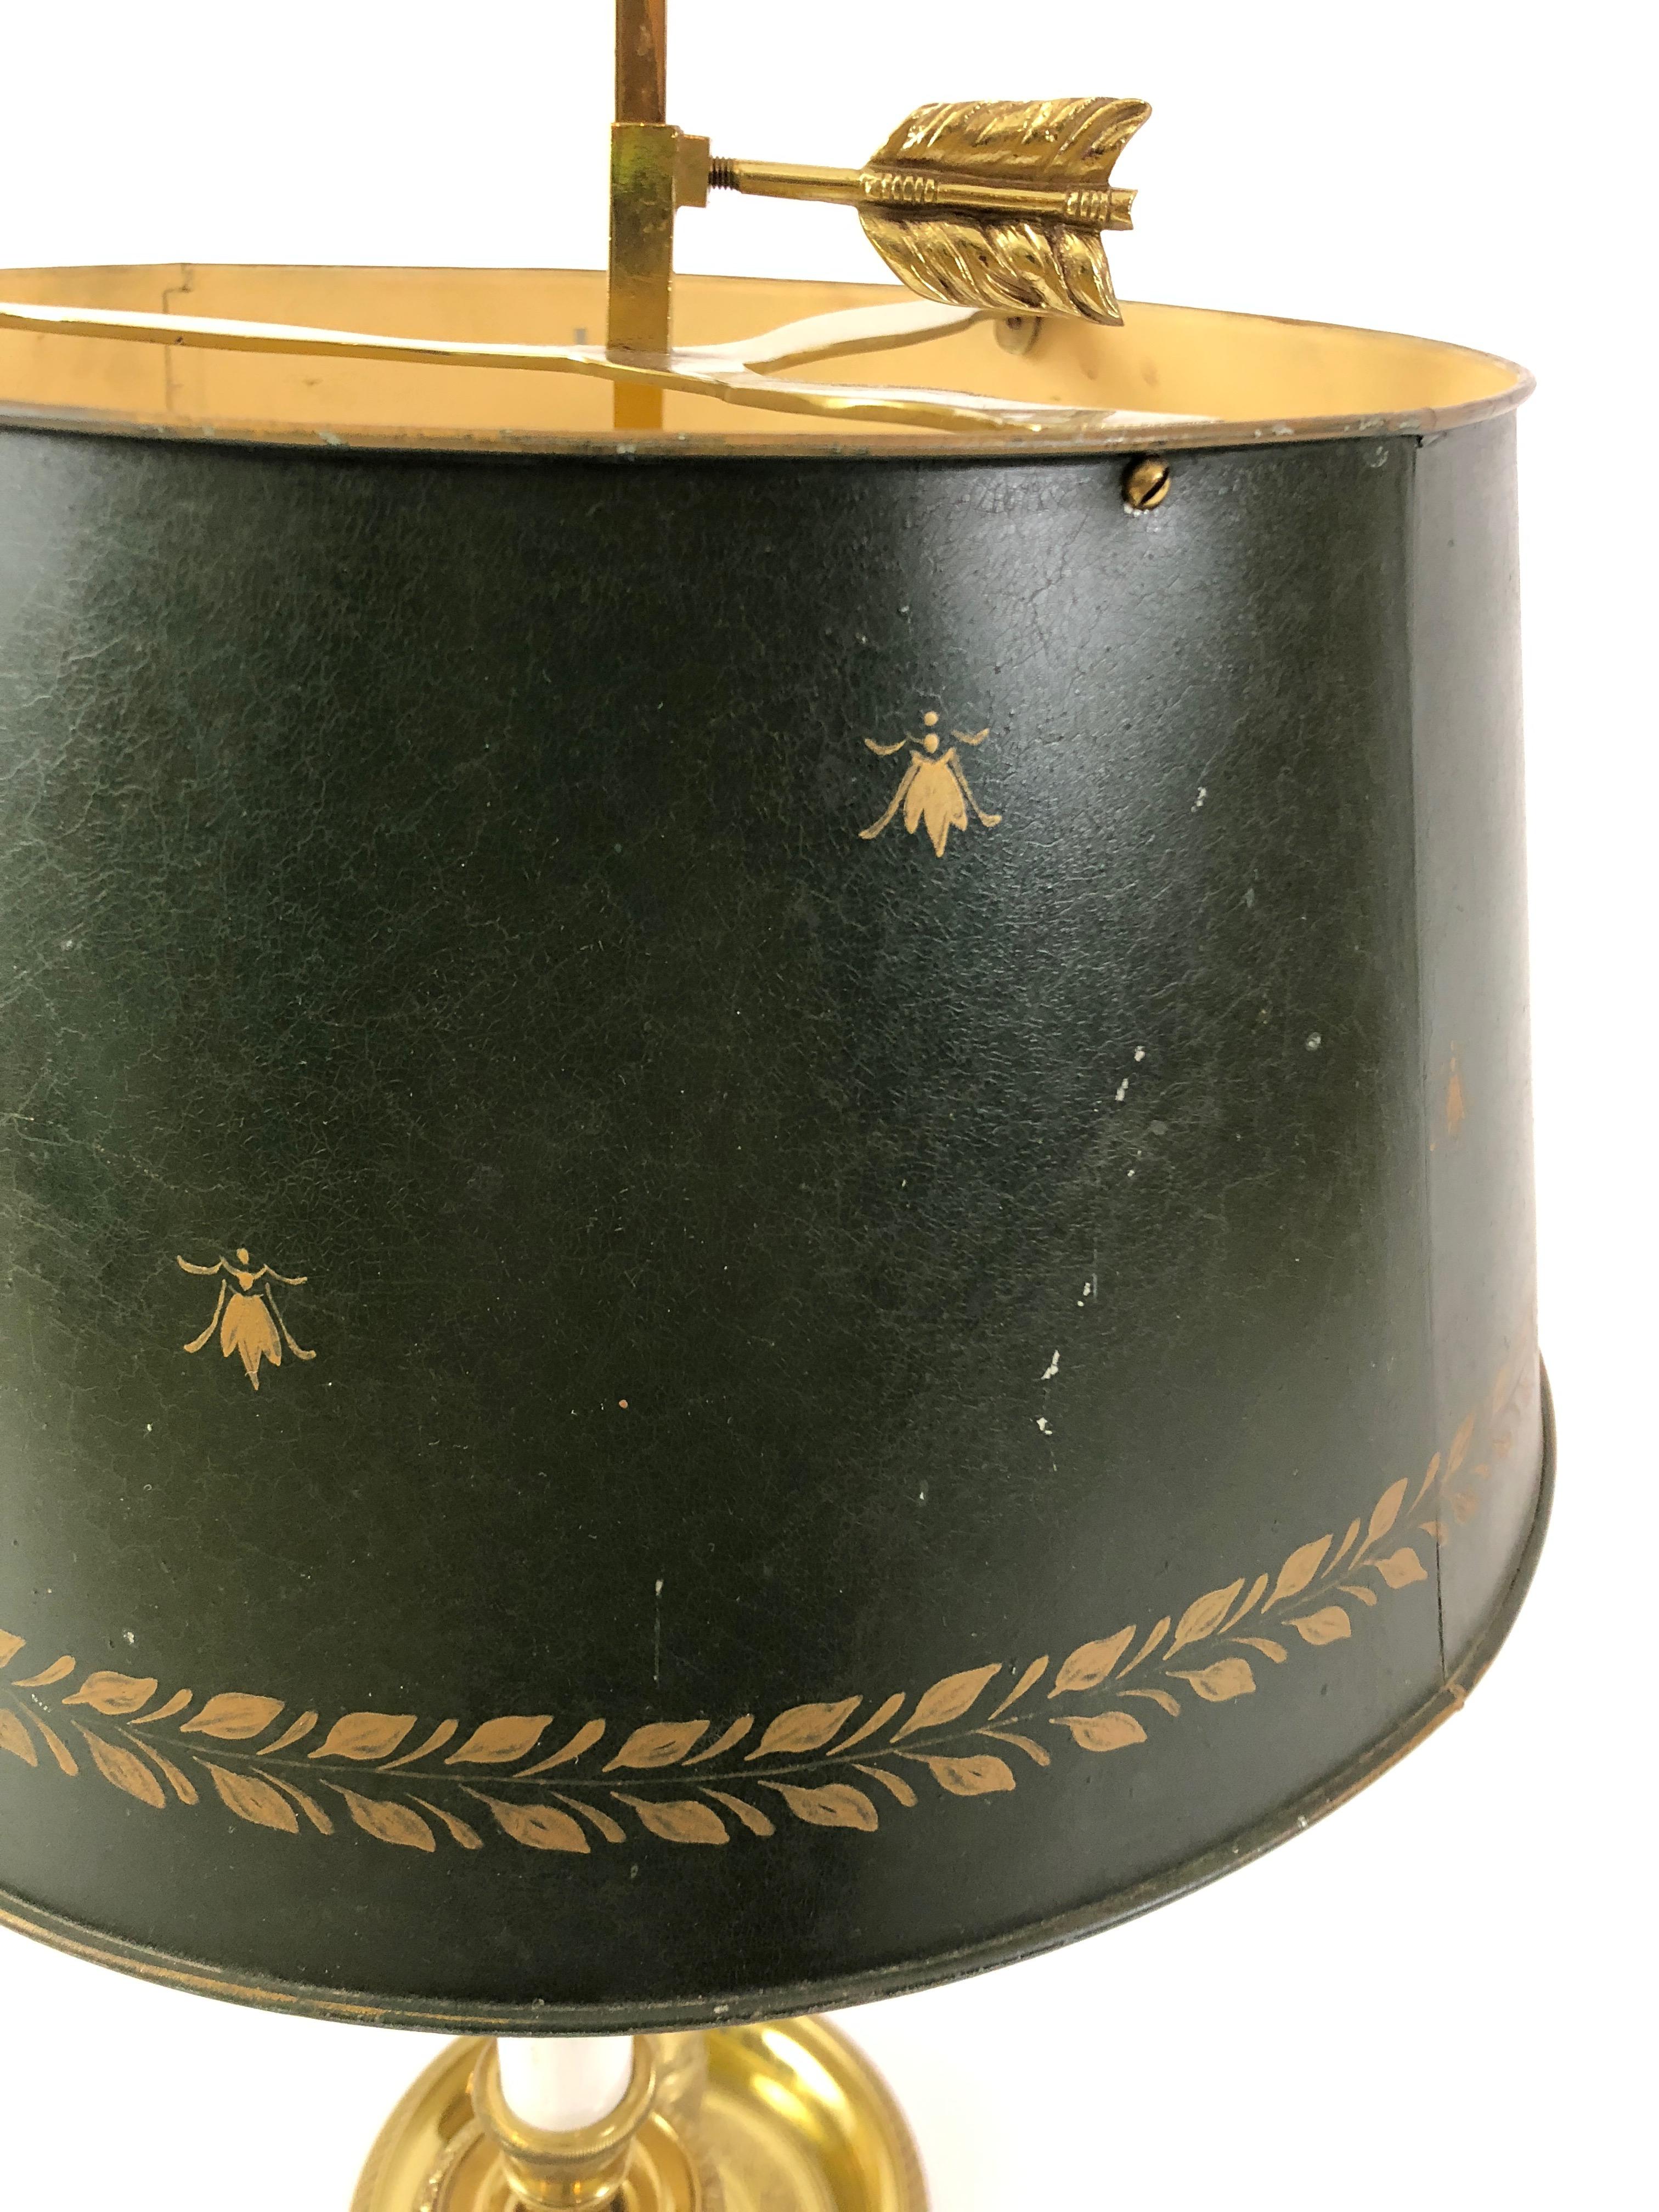 Lampe bouillotte classique en laiton français ayant 3 bras de chandelier courbés, un fleuron en forme de flèche, une base en laiton gravé et un merveilleux abat-jour en étain avec des abeilles dorées décoratives.